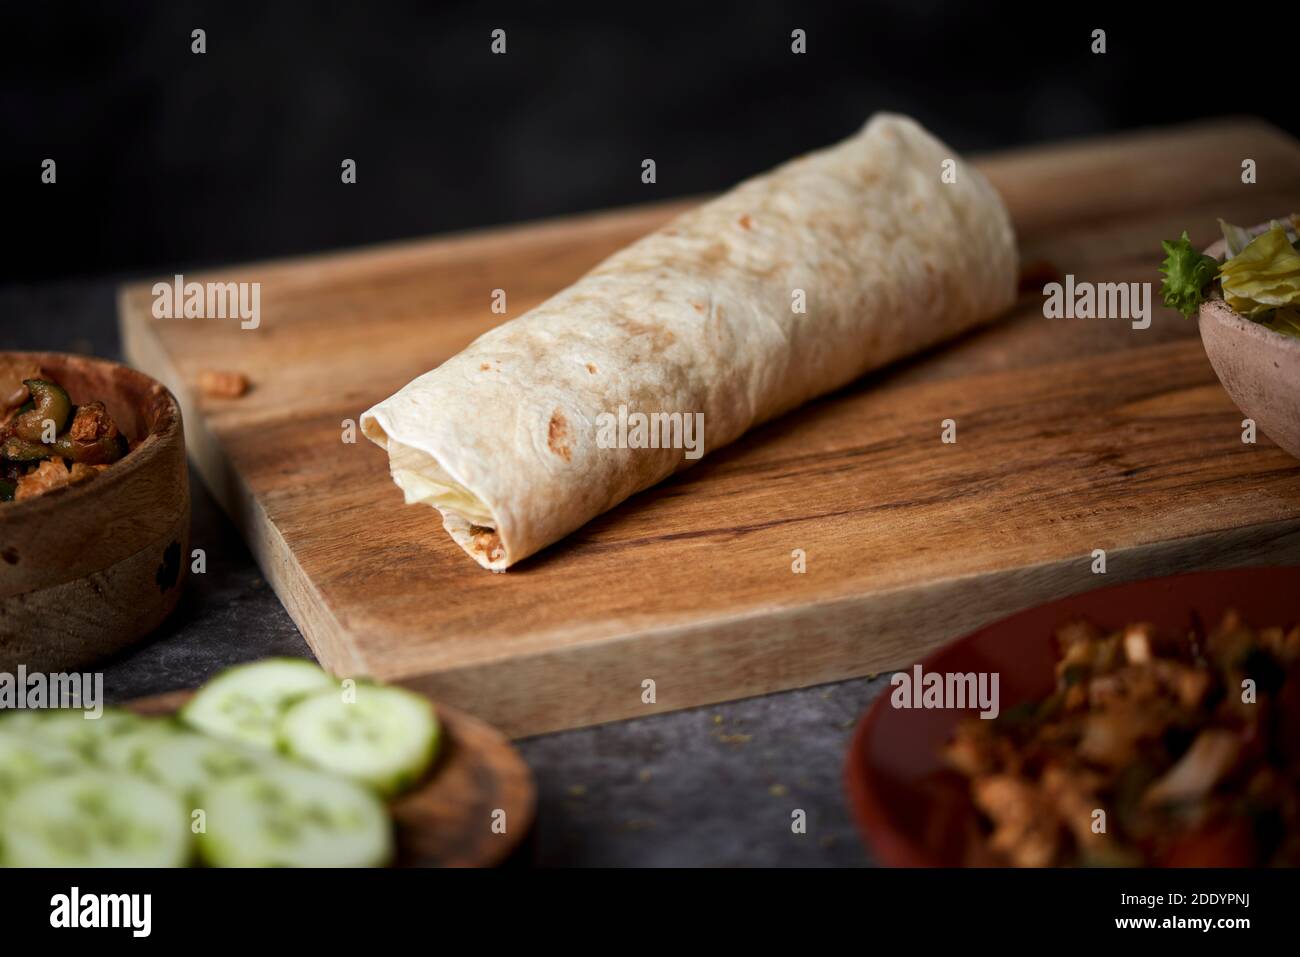 Nahaufnahme eines Durums oder Burritos, gefüllt mit Hühnerfleisch, das mit verschiedenen Gemüsesorten wie Zwiebeln oder rotem und grünem Pfeffer gekocht wird, und frischem Salat Stockfoto